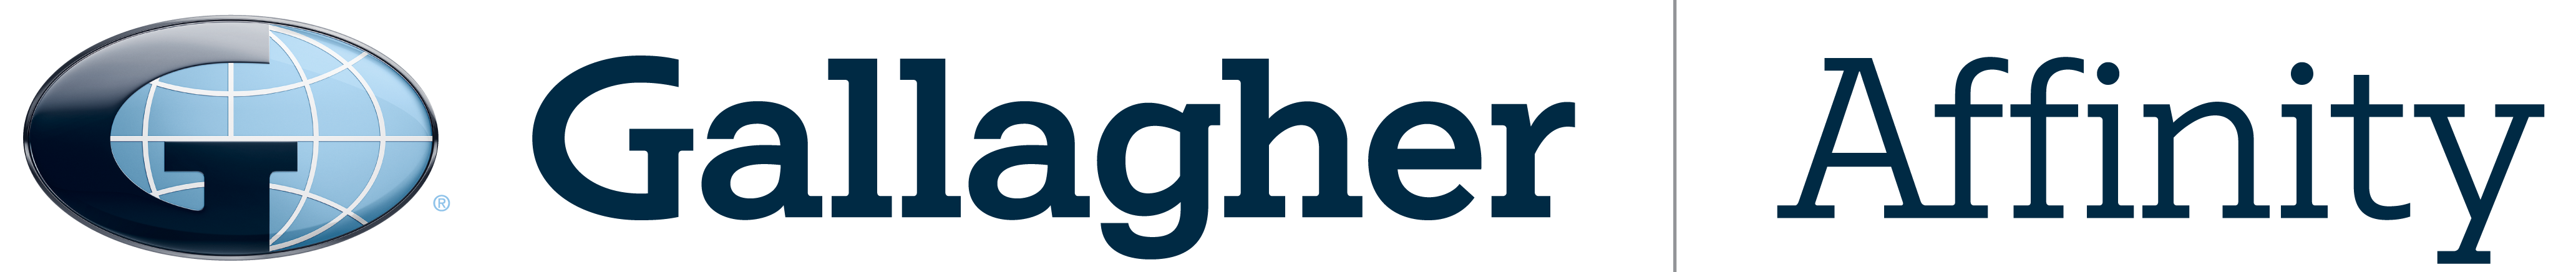 Gallagher Affinity Logo